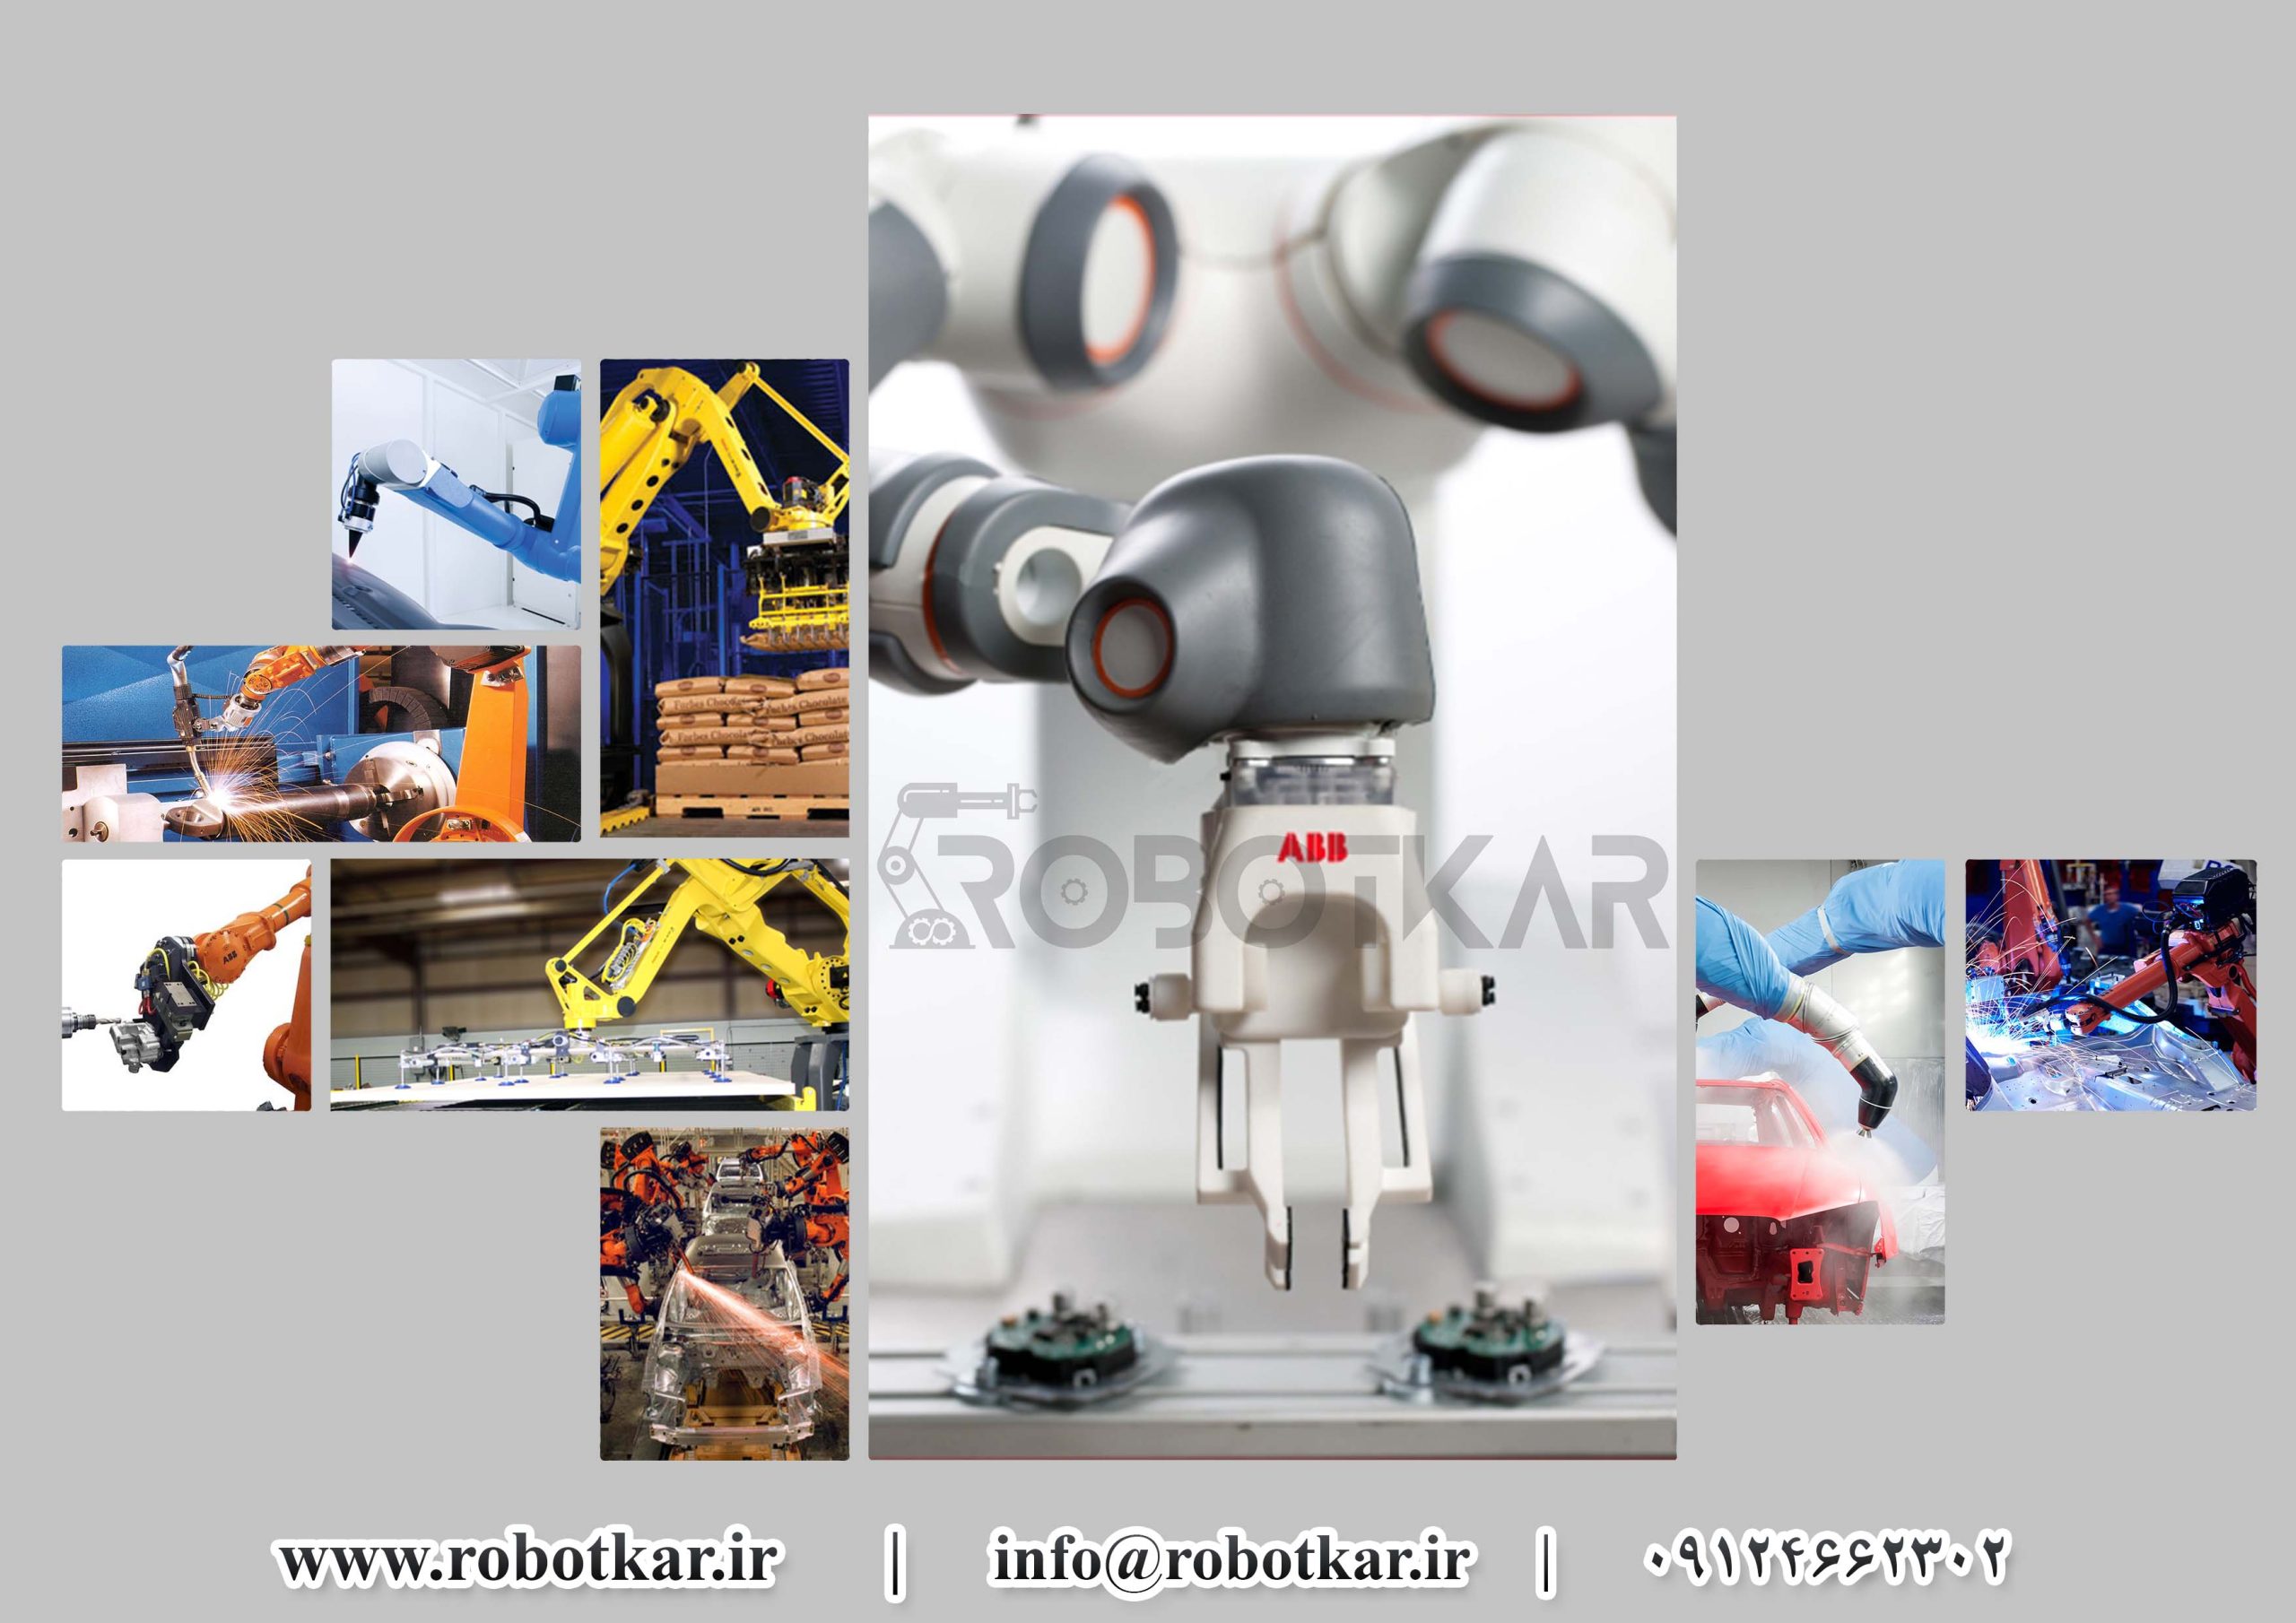 کاربردهای-ربات-صنعتی-در-صنایع-مختلف-ربات-جوشکار-ربات-برشکار-ربات-پالت-گذاری-ربات-رنگ-پاشی-ربات-تزریق-ربات-پیکرتراش-ربات-کار